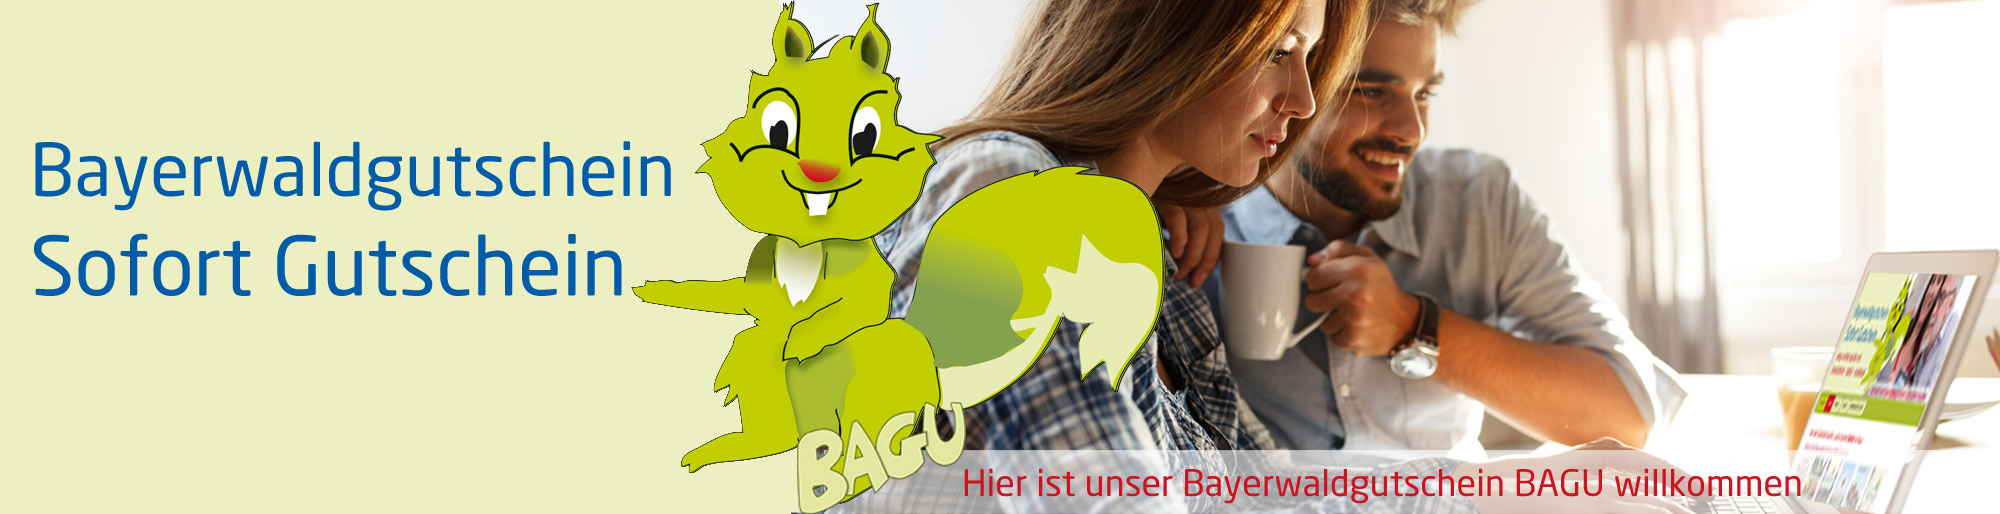 Bayerwald Gutschein Bagu Online Sofort